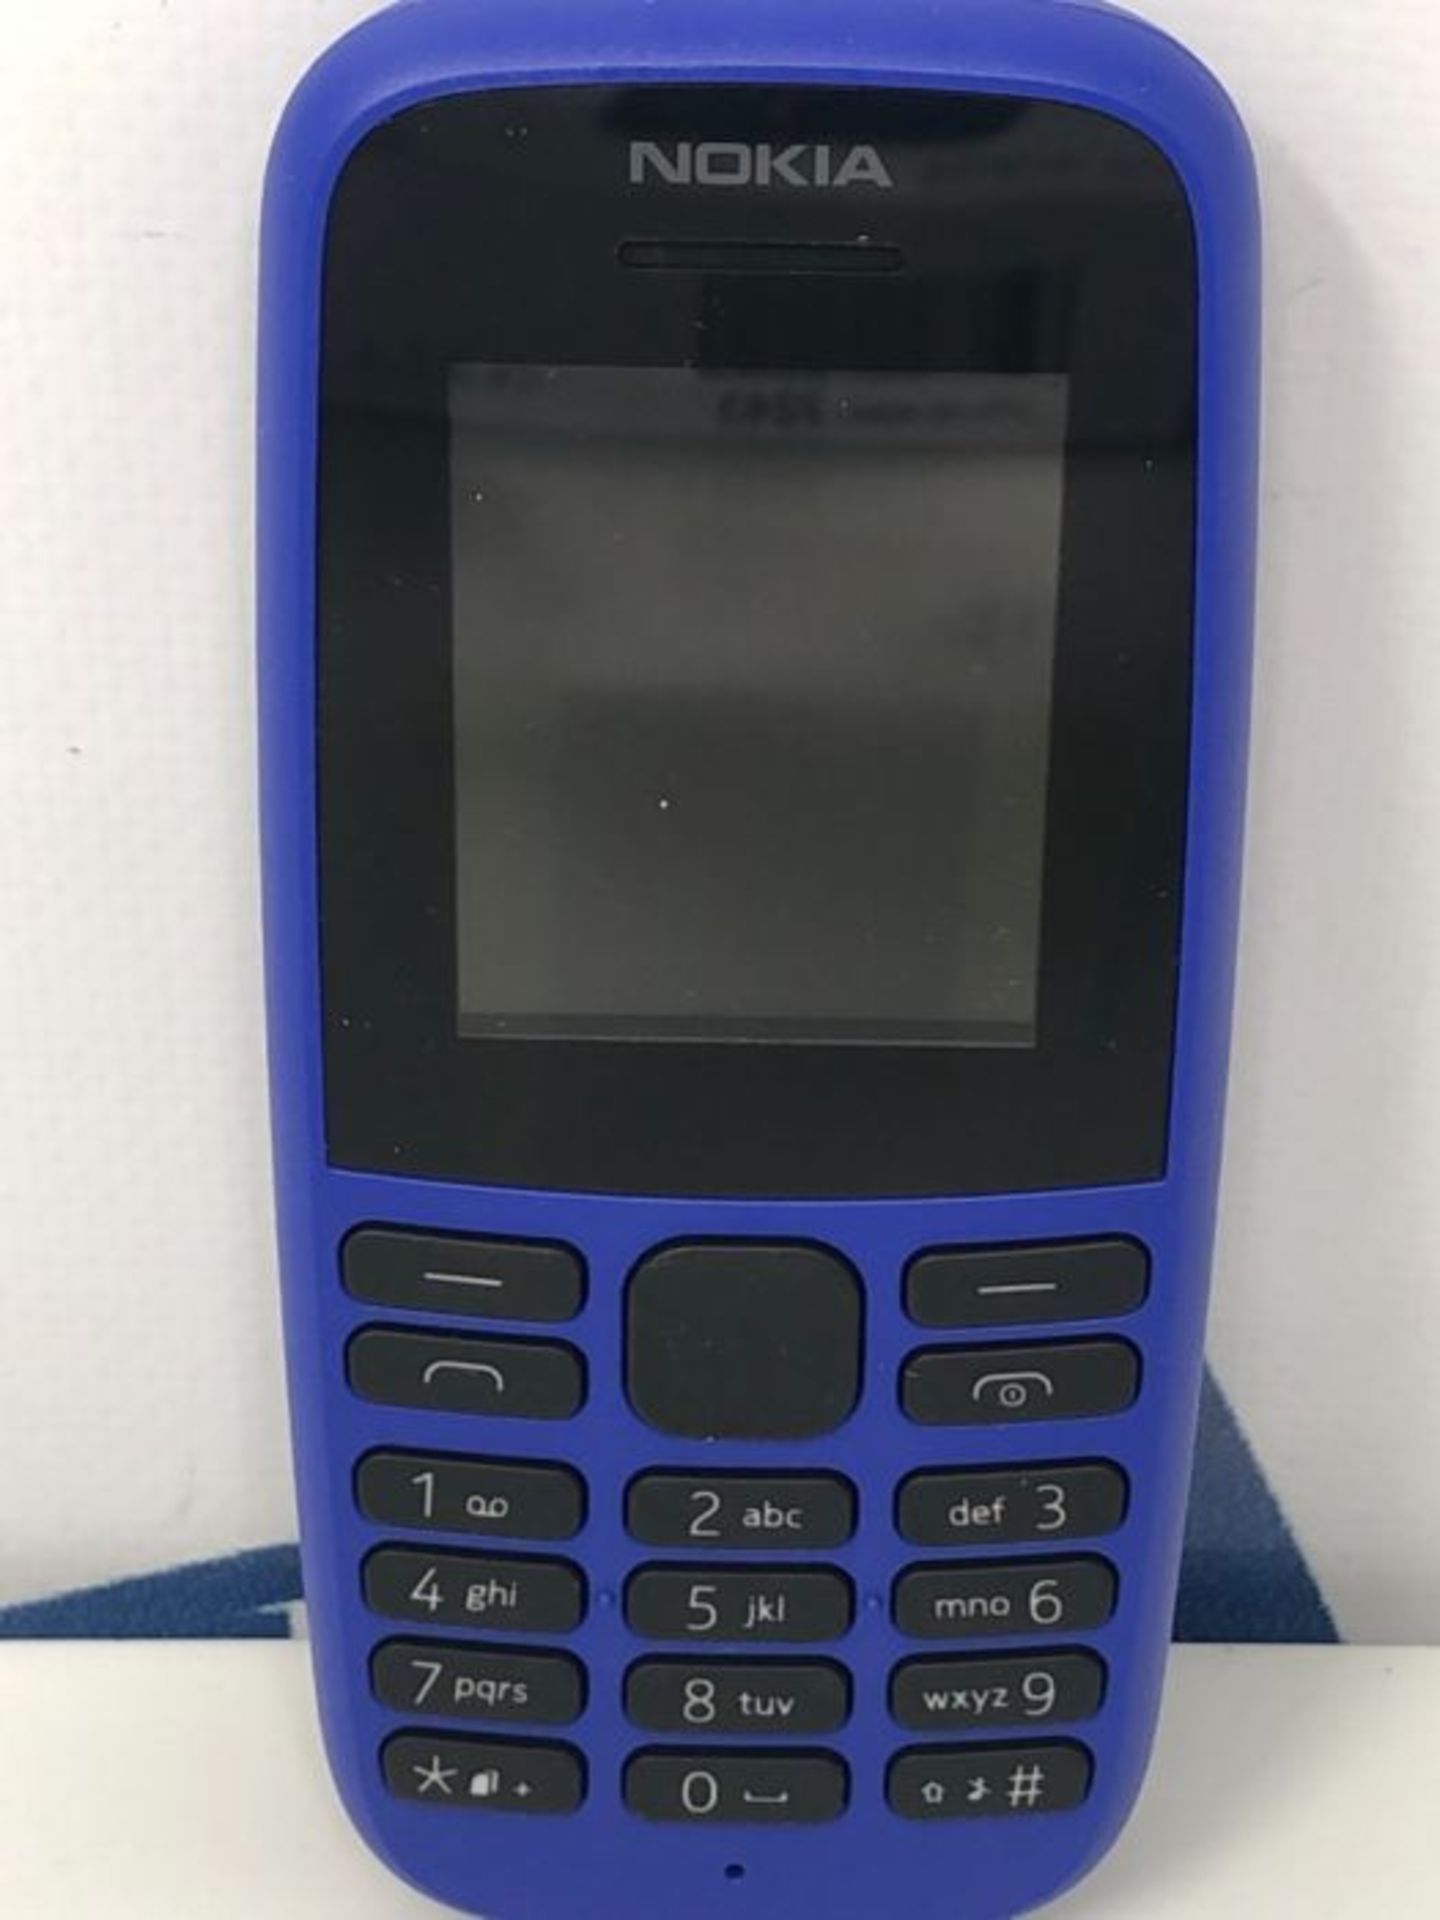 Nokia 105 Dual-SIM (2019) Blue unlocked - Image 2 of 2